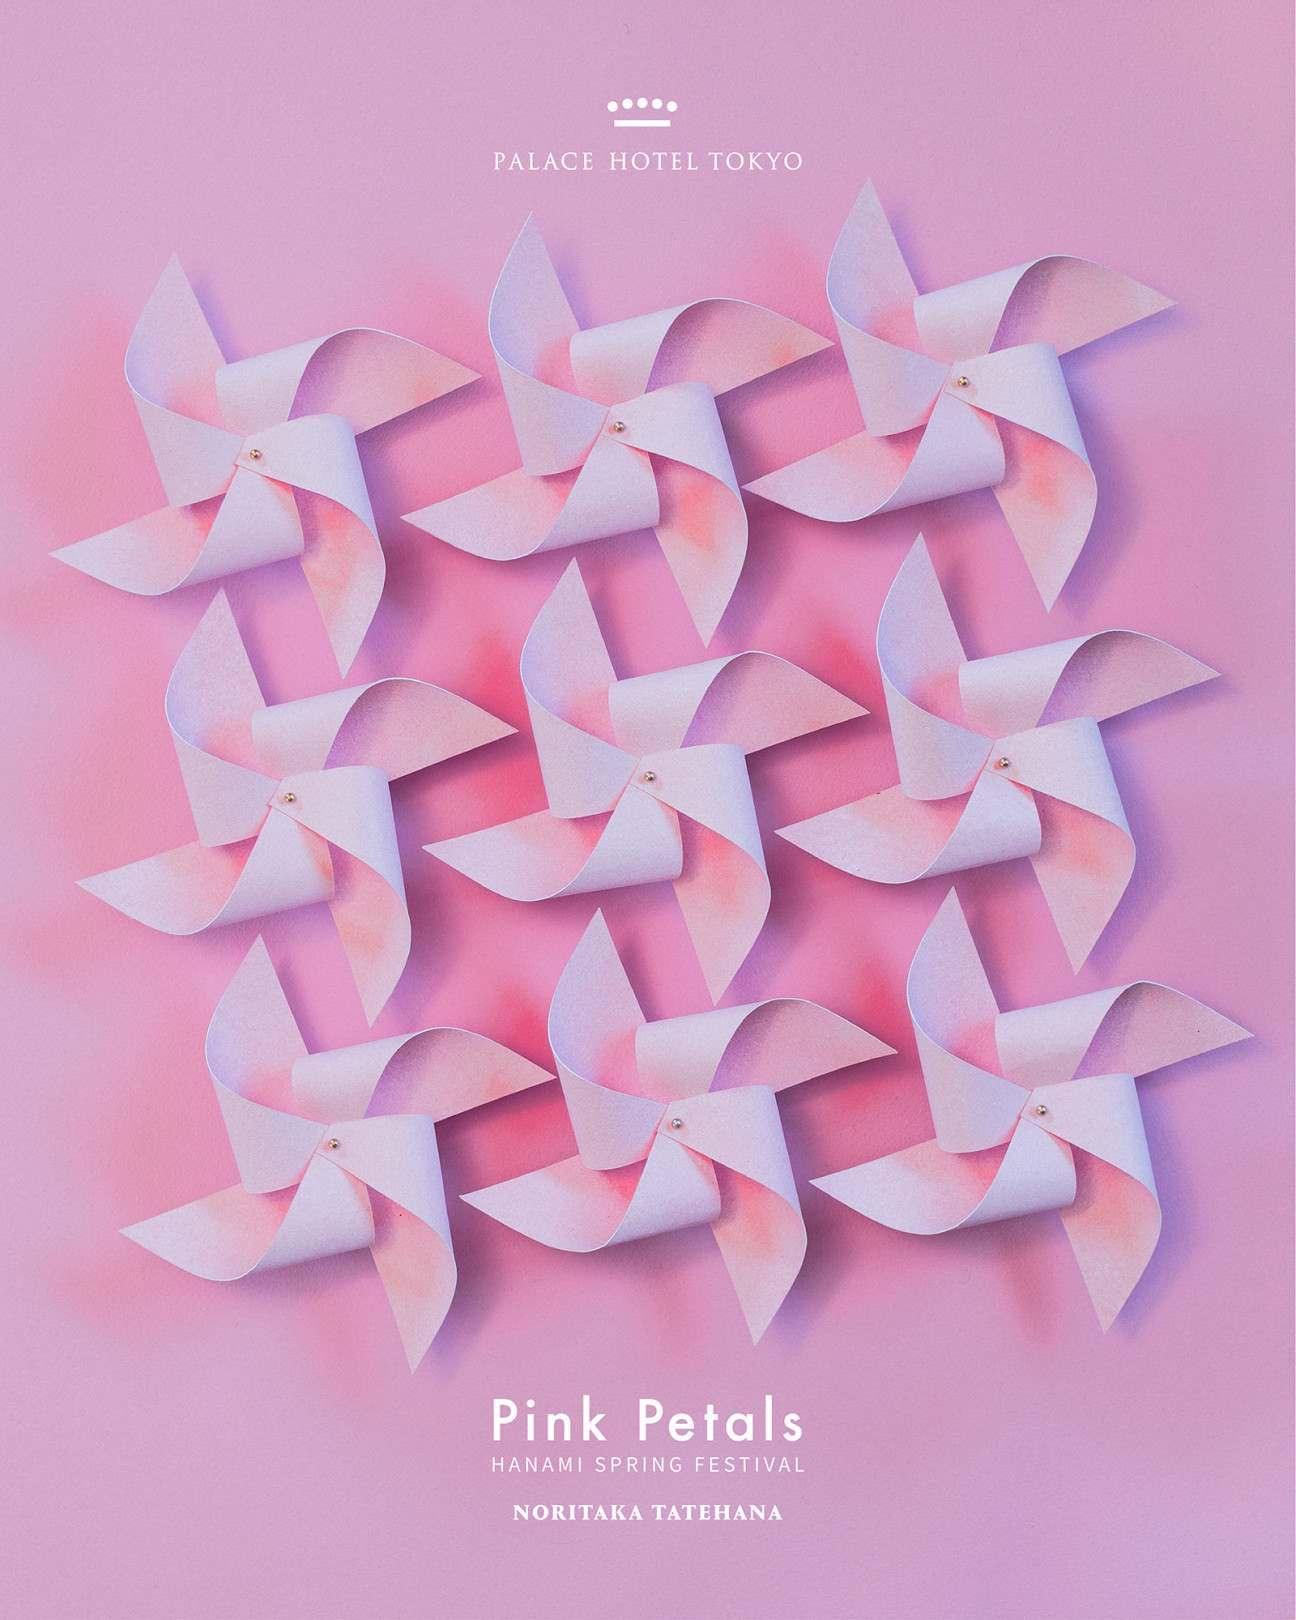 パレルホテル東京×舘鼻則孝 コラボ企画第3弾「HANAMI SPRING FESTIVAL-Pink Petals–」